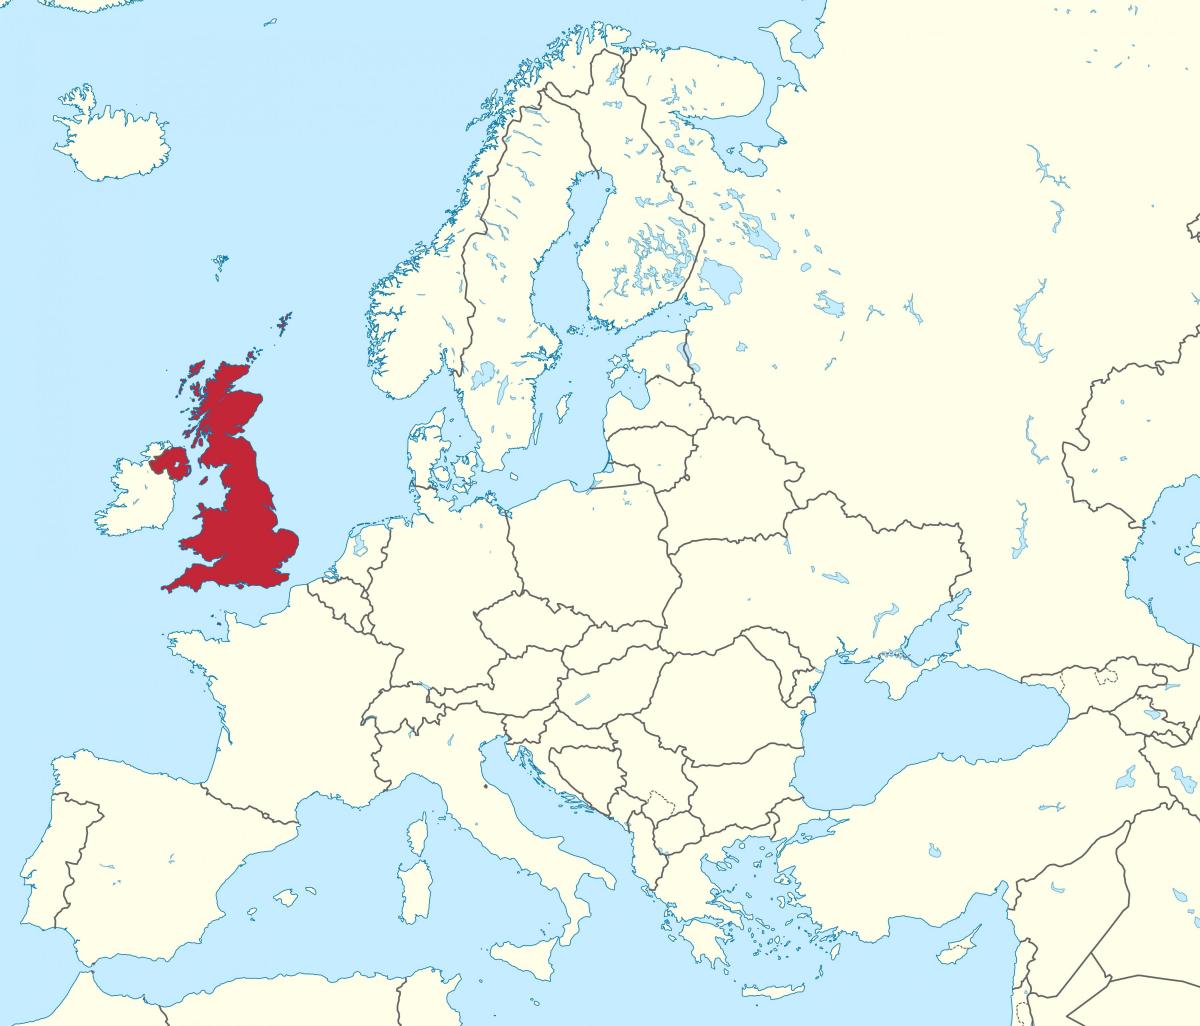 United Kingdom (UK) location on the Europe map